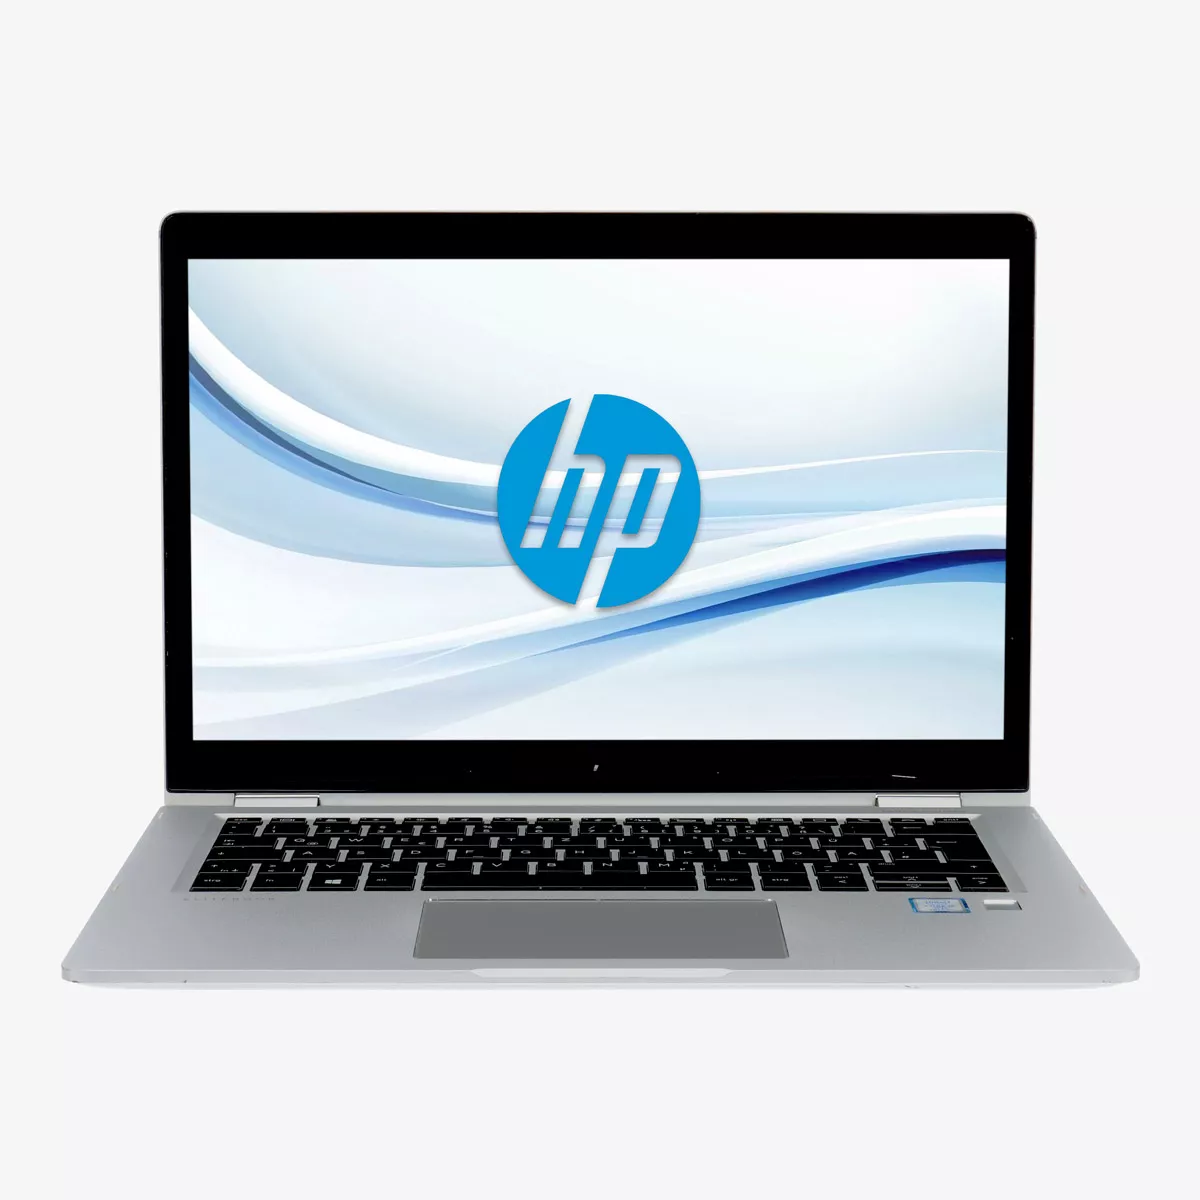 HP EliteBook x360 1030 G2 Core i5 7300U 240 GB M.2 SSD Touchscreen Webcam A+